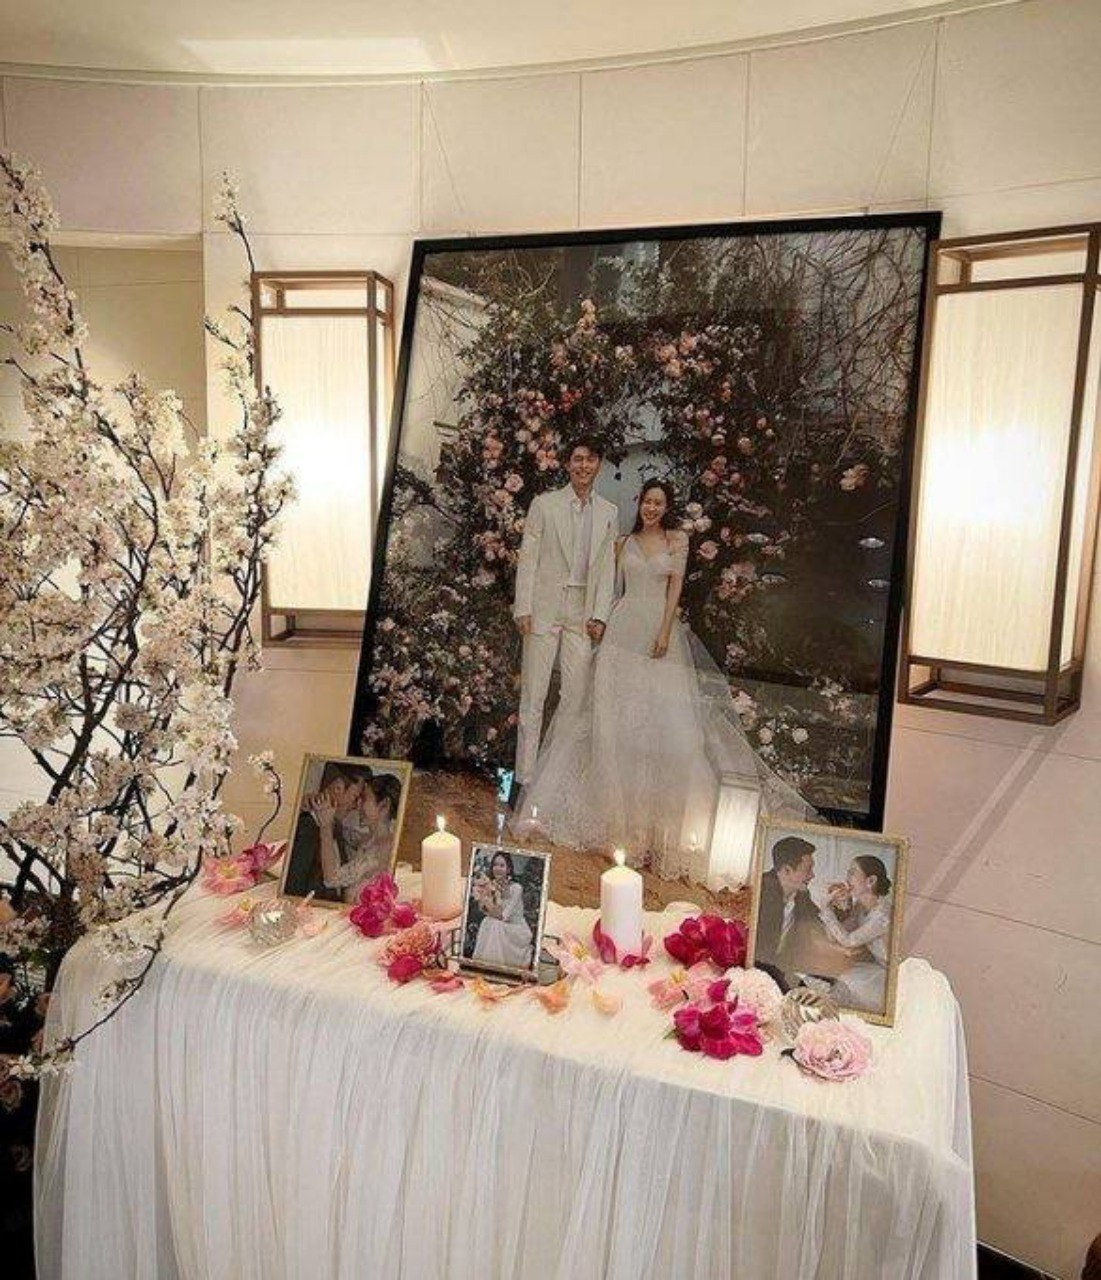 Rò rỉ thêm hình ảnh hiếm hoi từ đám cưới Hyun Bin và Son Ye Jin